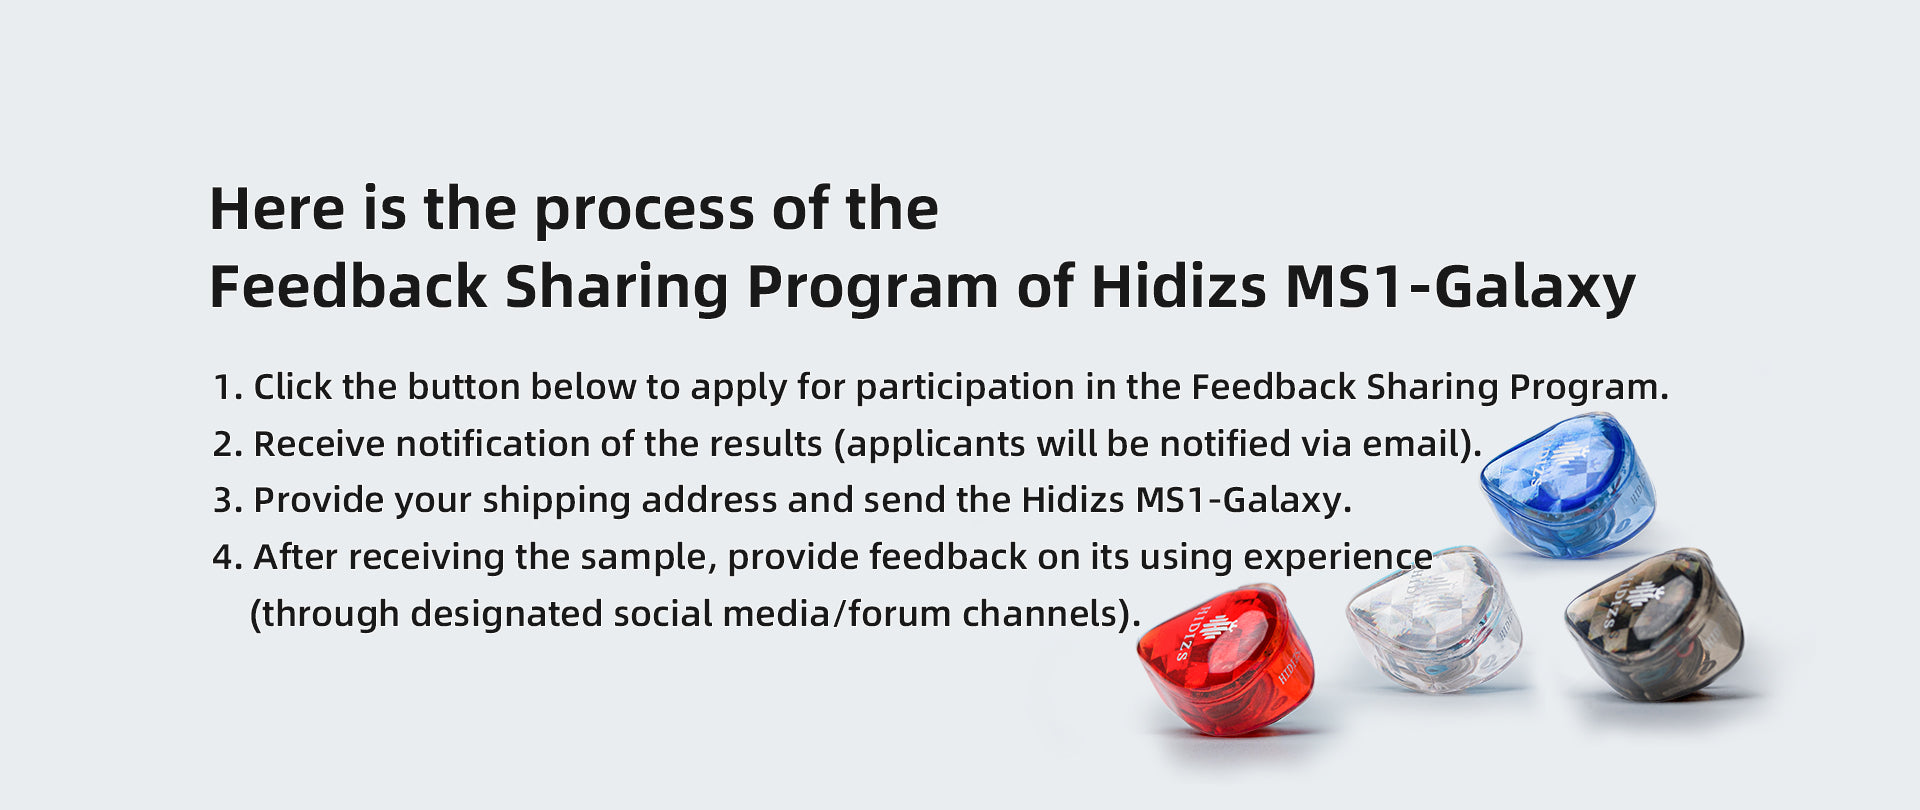 HIDIZS-Hidizs_MS1-Galaxy_Feedback_Sharing_Program-BANNER-230811-03